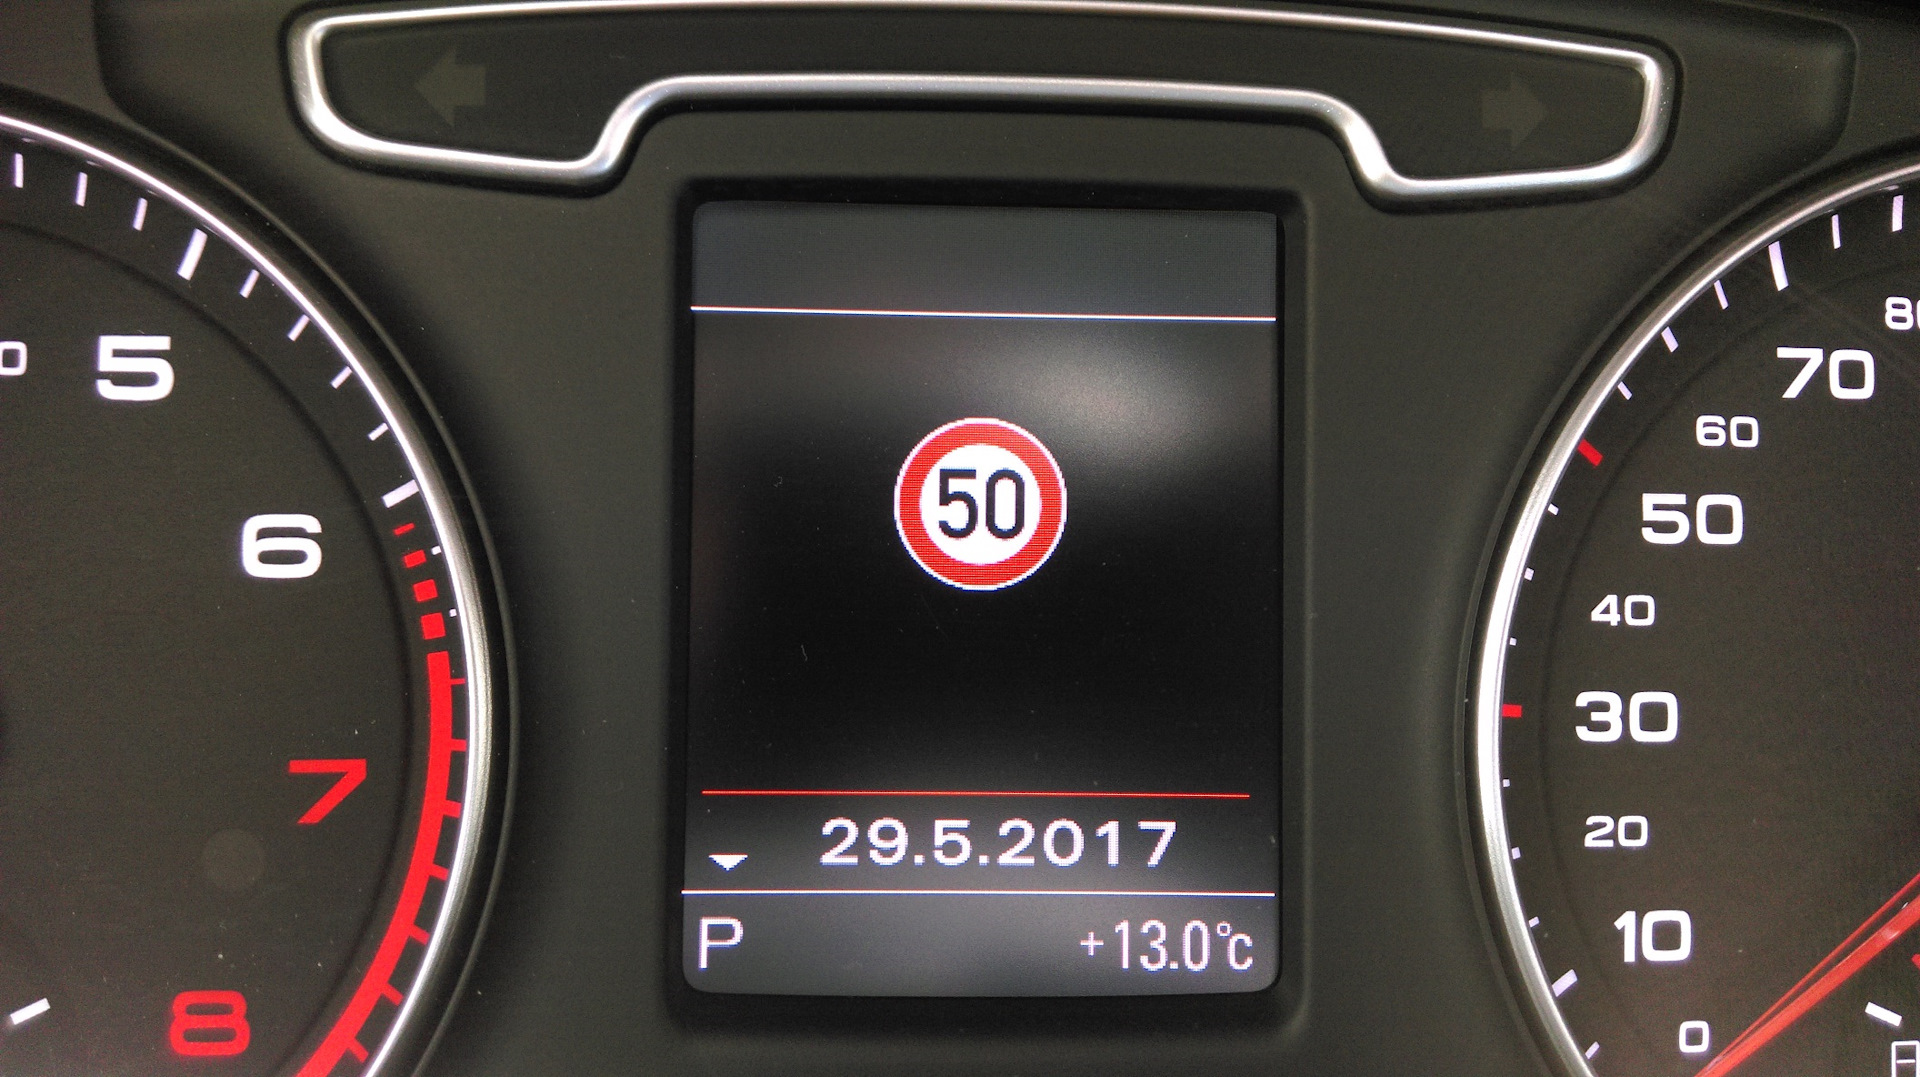 Ограничение скорости на телефоне. Audi q5 значок ограничения скорости. Система распознавания дорожных знаков Вольво хс60. Распознавание знаков на BMW e70. Распознавание знаков Туарег NF.